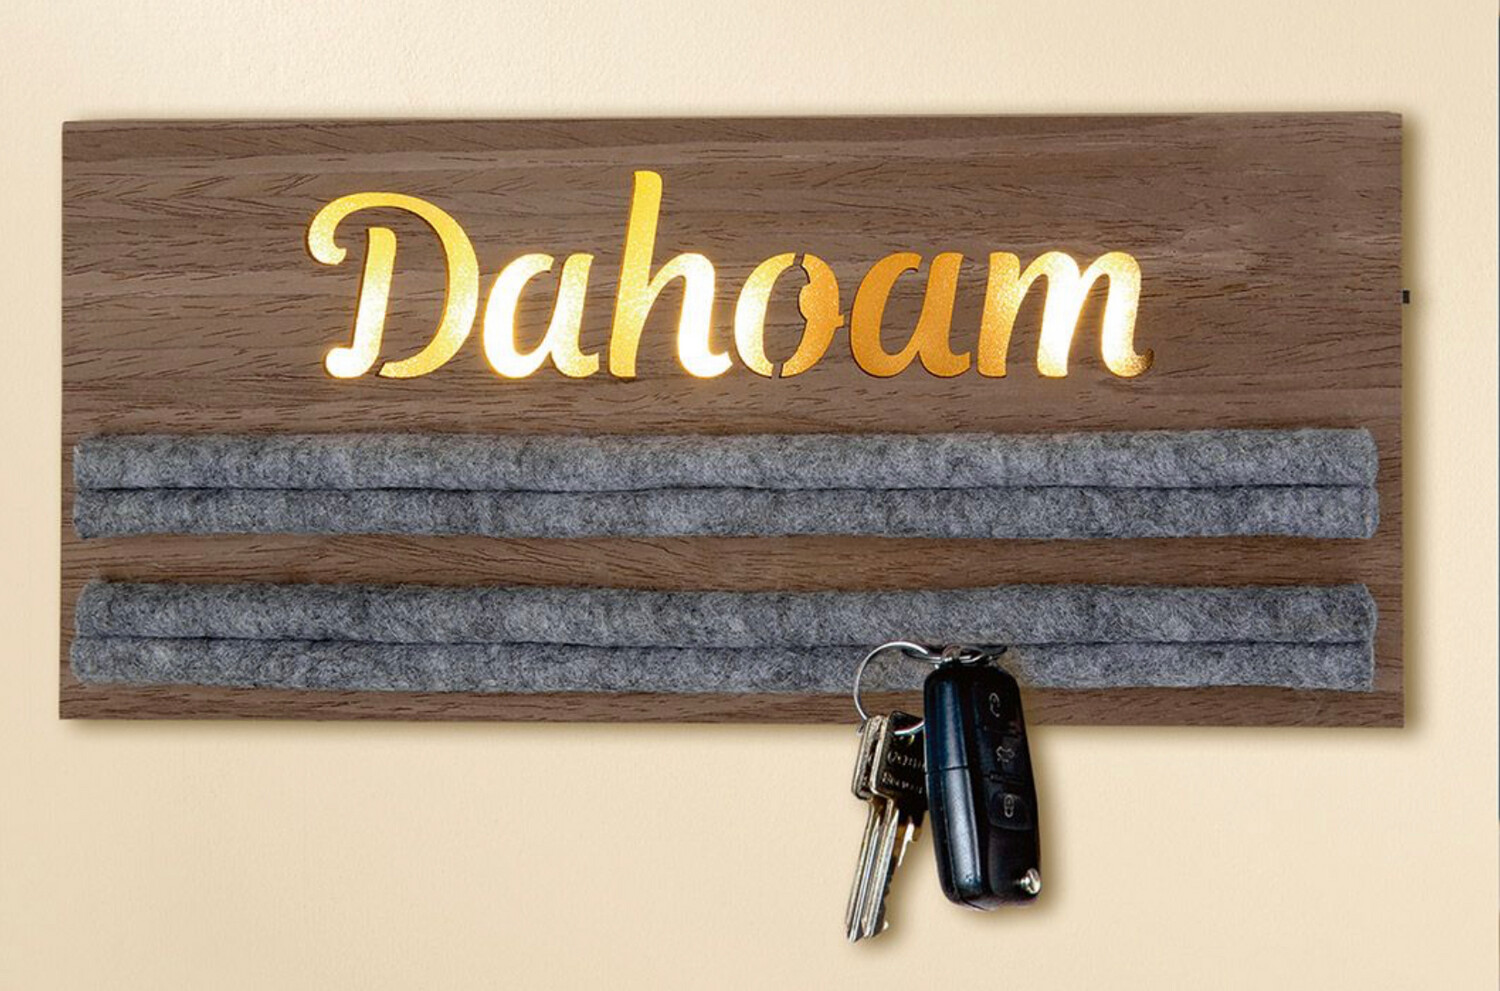 Schlüsselboard " Dahoam "